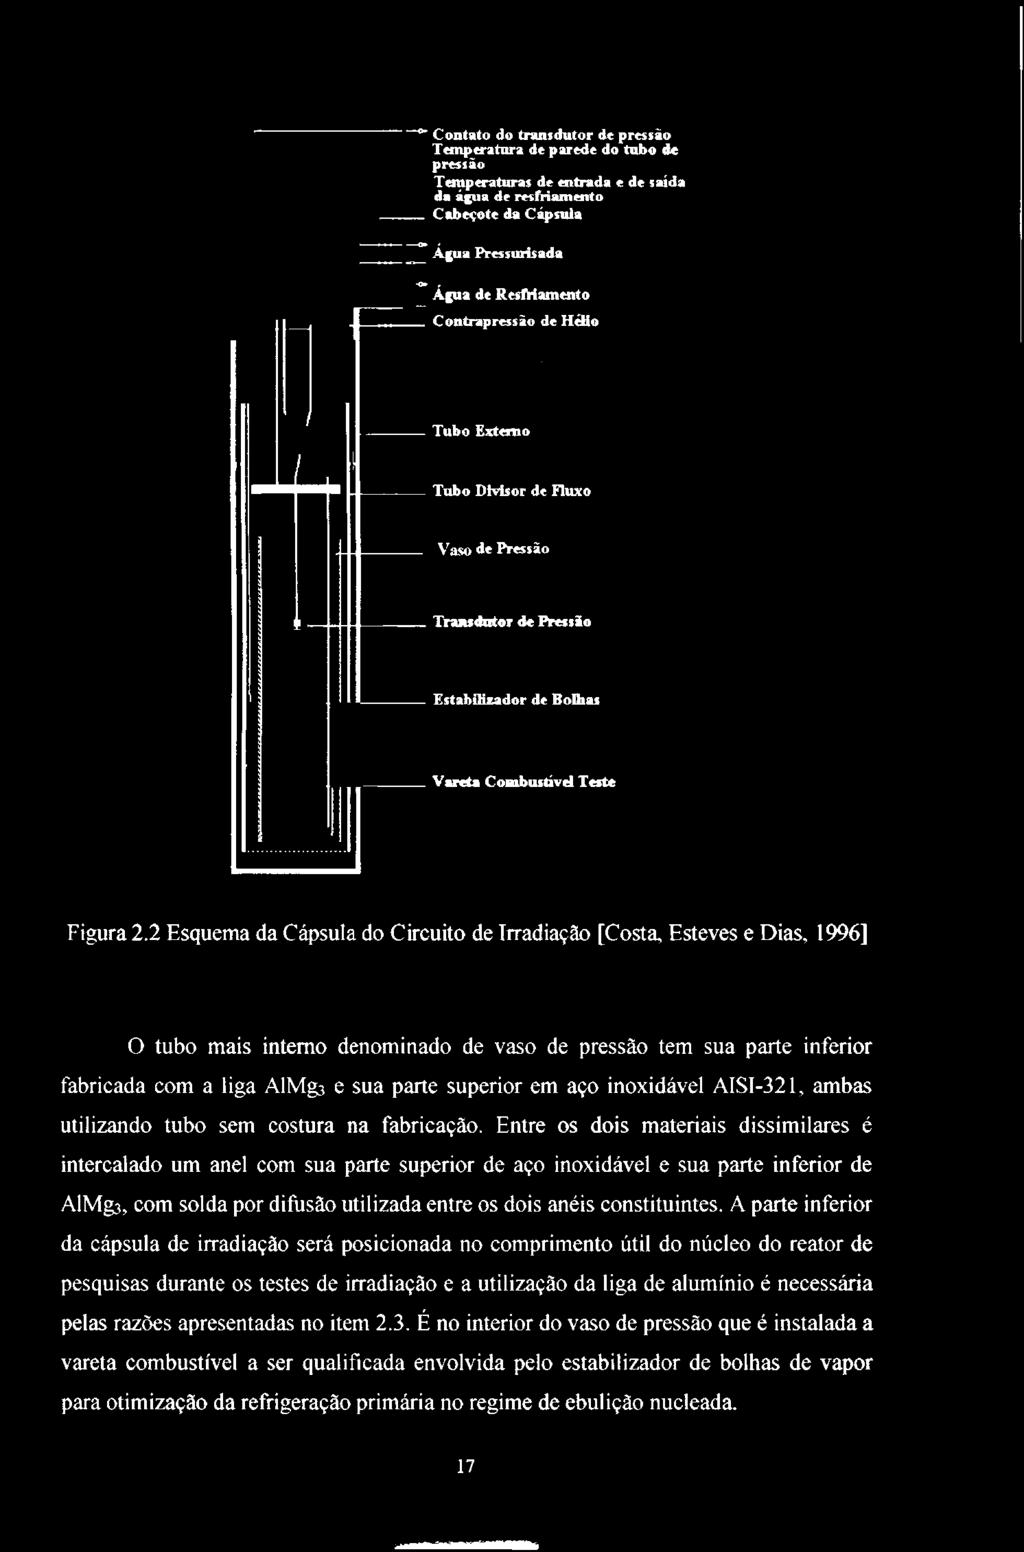 2 Esquema da Cápsula do Circuito de Irradiação [Costa, Esteves e Dias, 1996] O tubo mais interno denominado de vaso de pressão tem sua parte inferior fabricada com a liga AlMg3 e sua parte superior